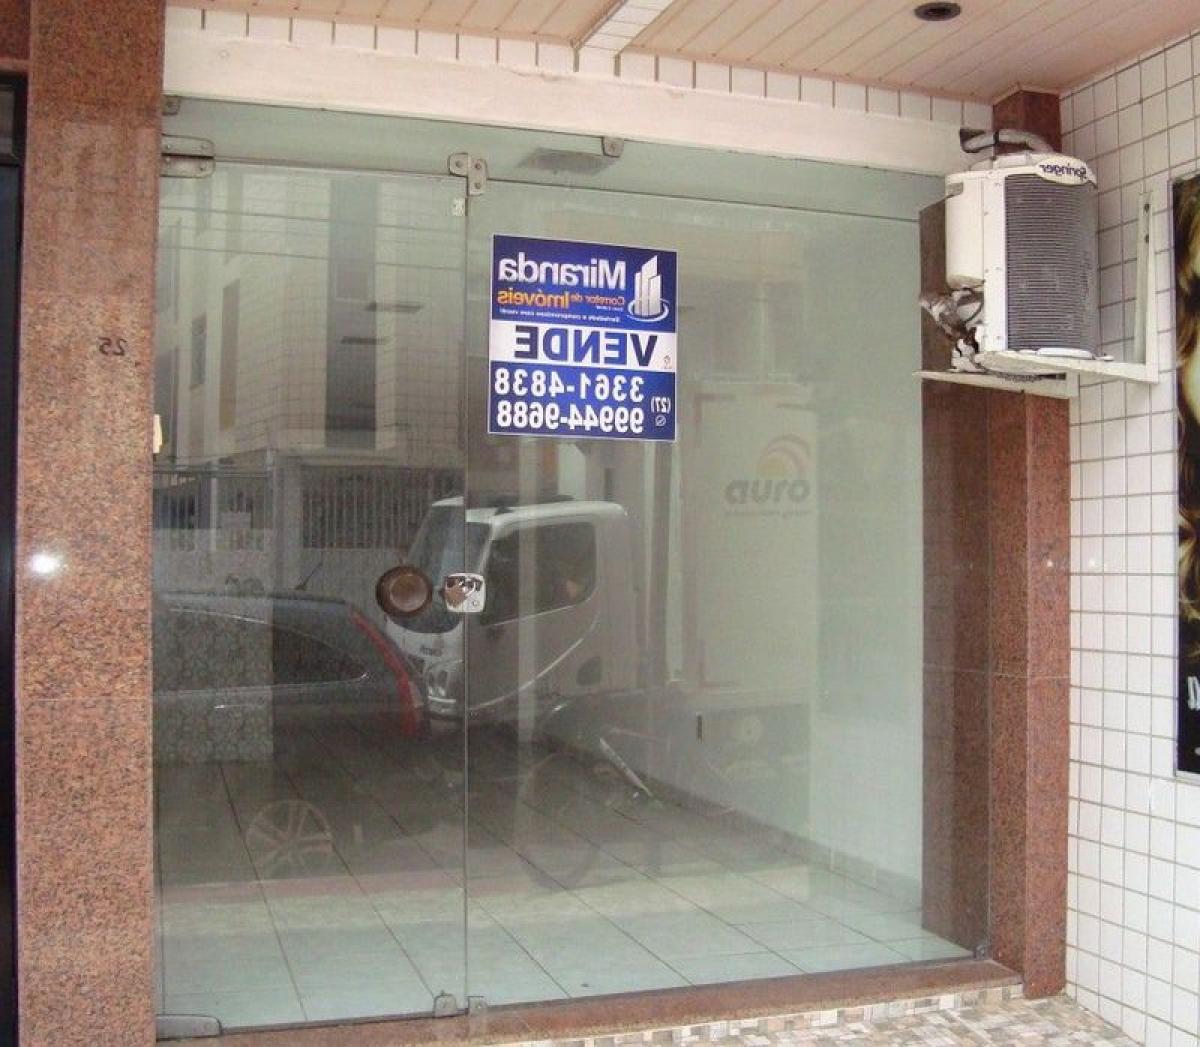 Picture of Other Commercial For Sale in Espirito Santo, Espirito Santo, Brazil